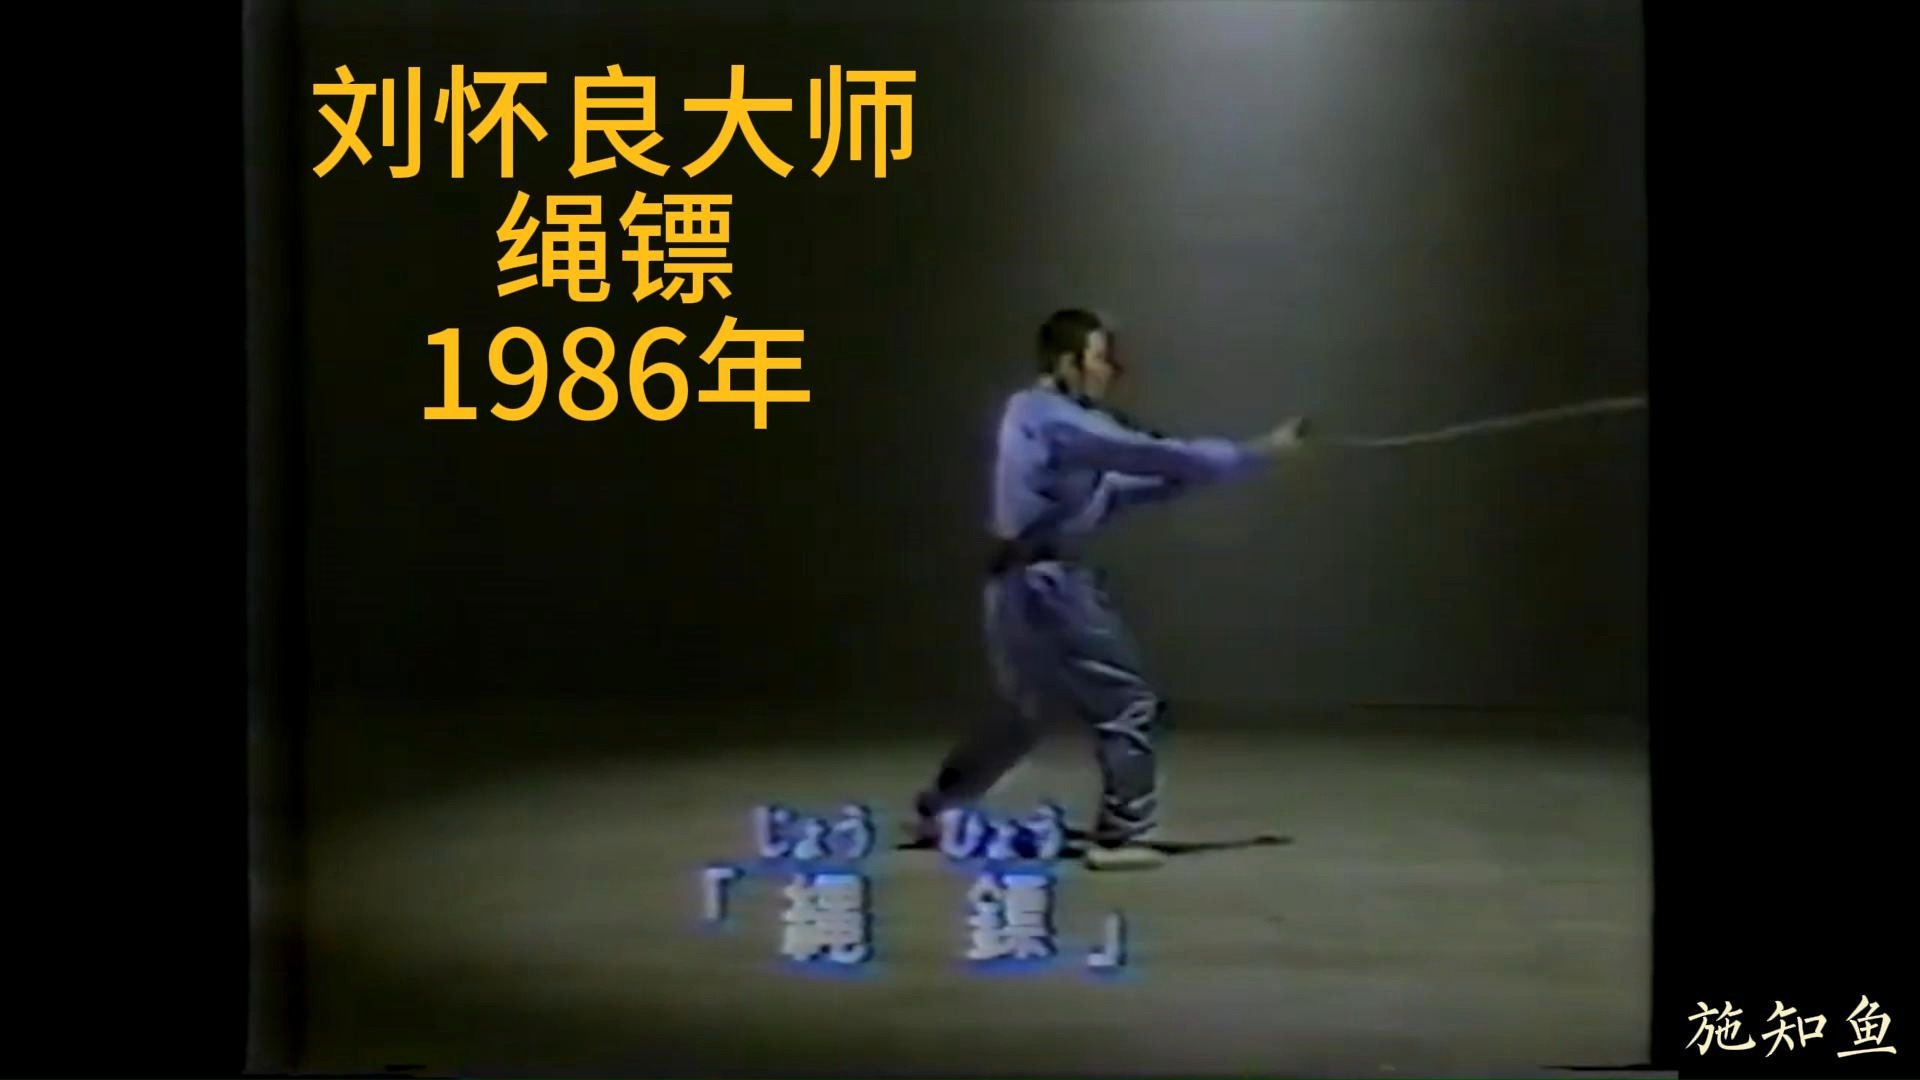 刘怀良大师1986年演练的绳镖